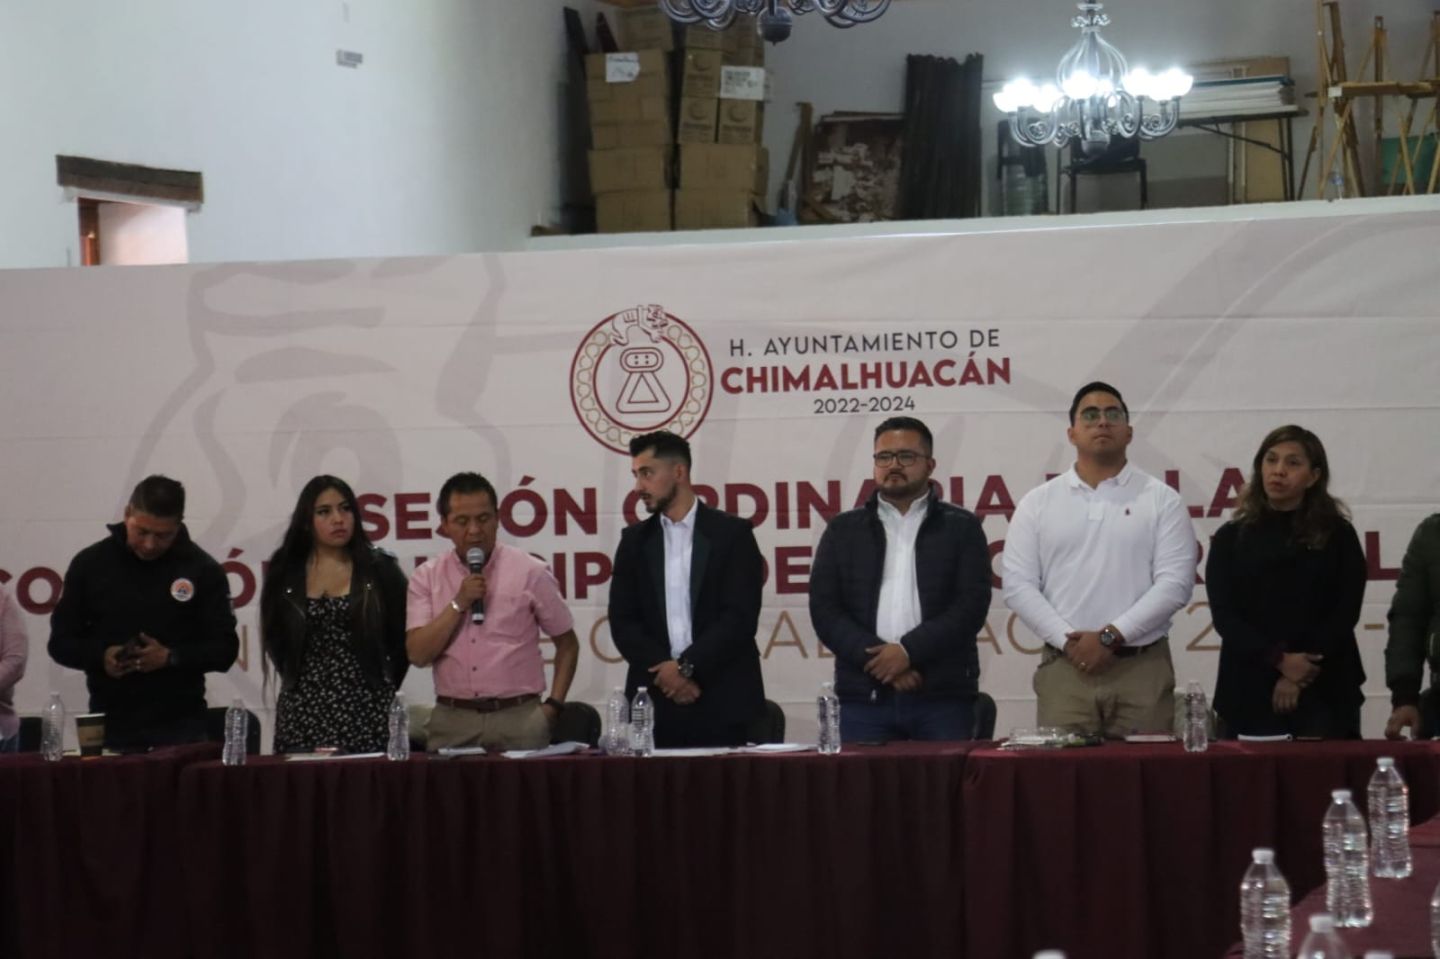 Avanza Chimalhuacán en sus Metas de Mejora Regulatoria
en 2023 y Optimiza y Eficientiza su Atención a la Ciudadanía
